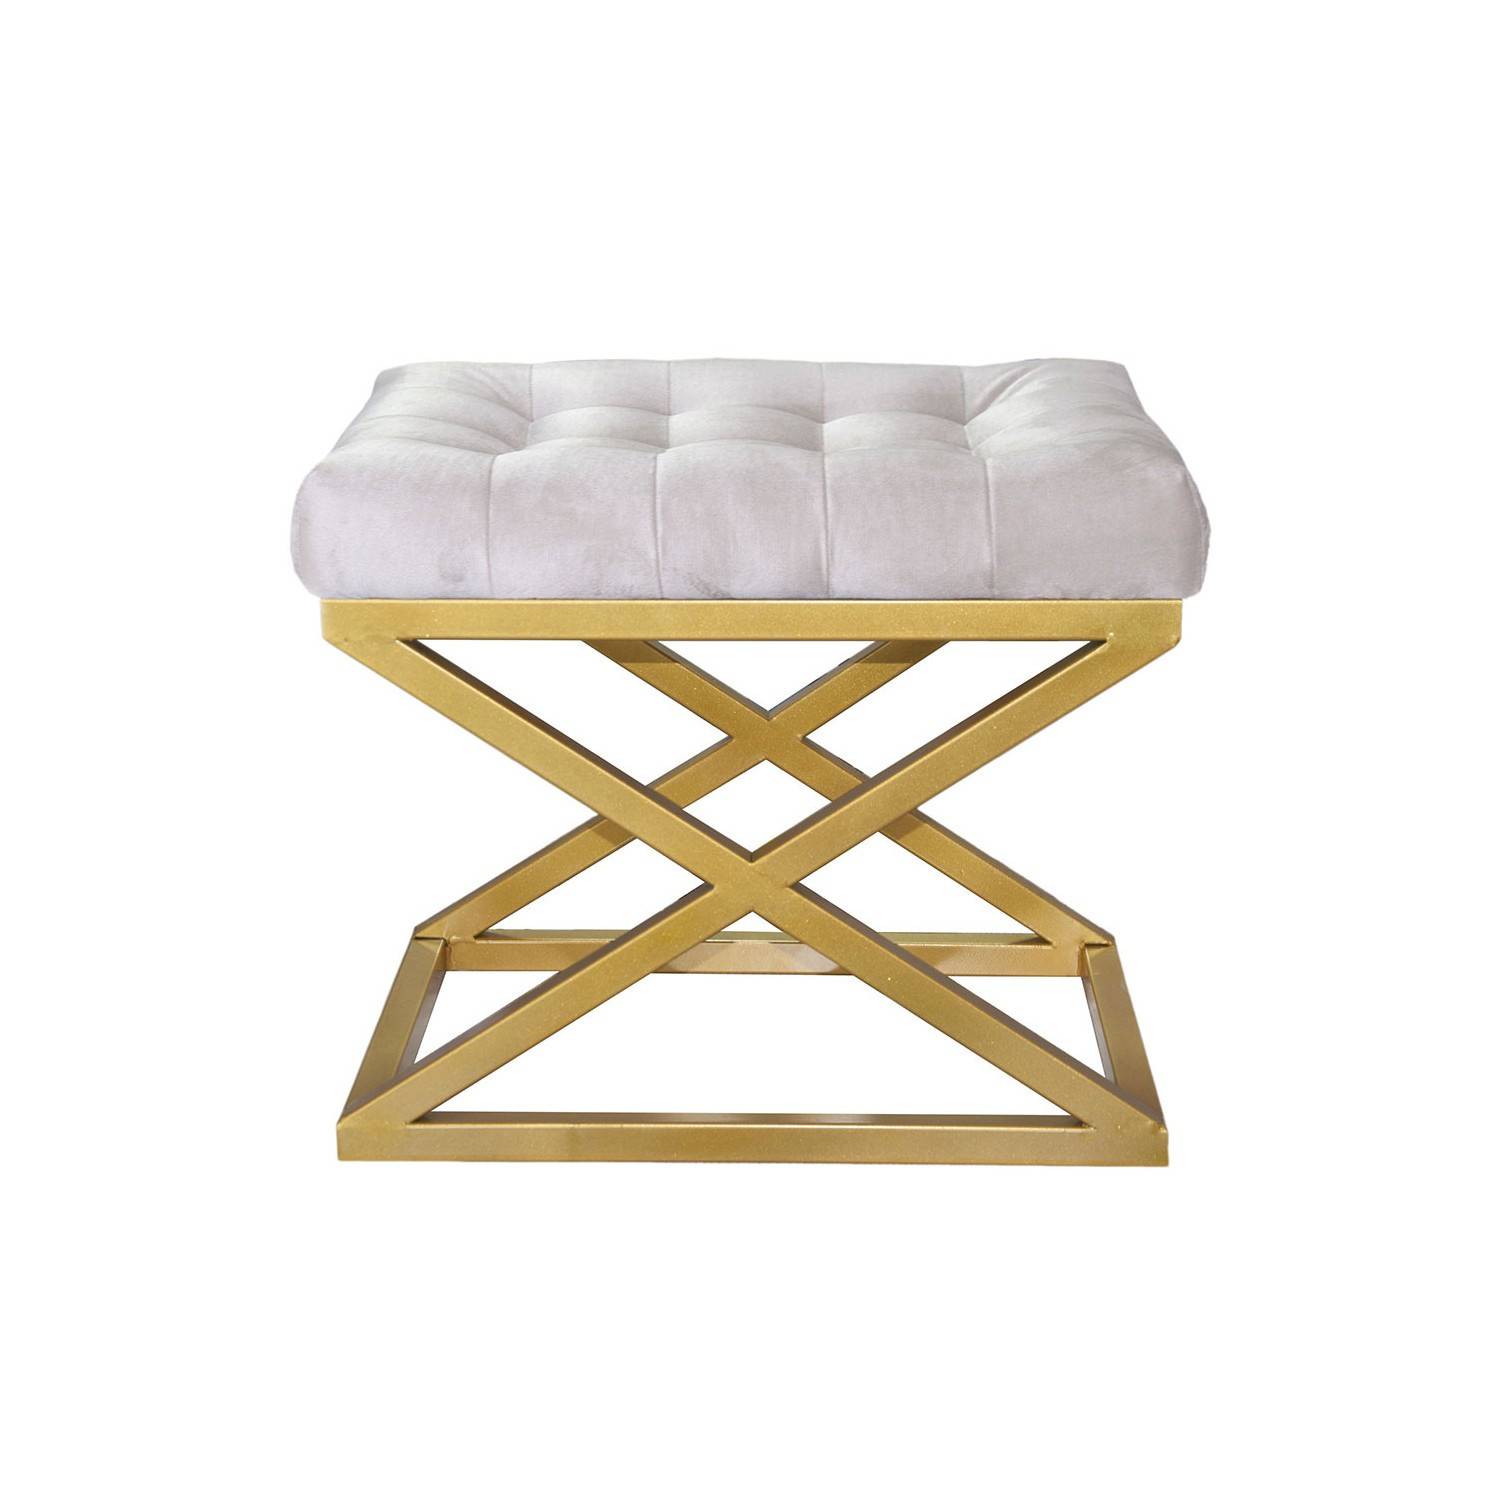 Taburete Ulad de metal dorado y terciopelo blanco, asiento tapizado